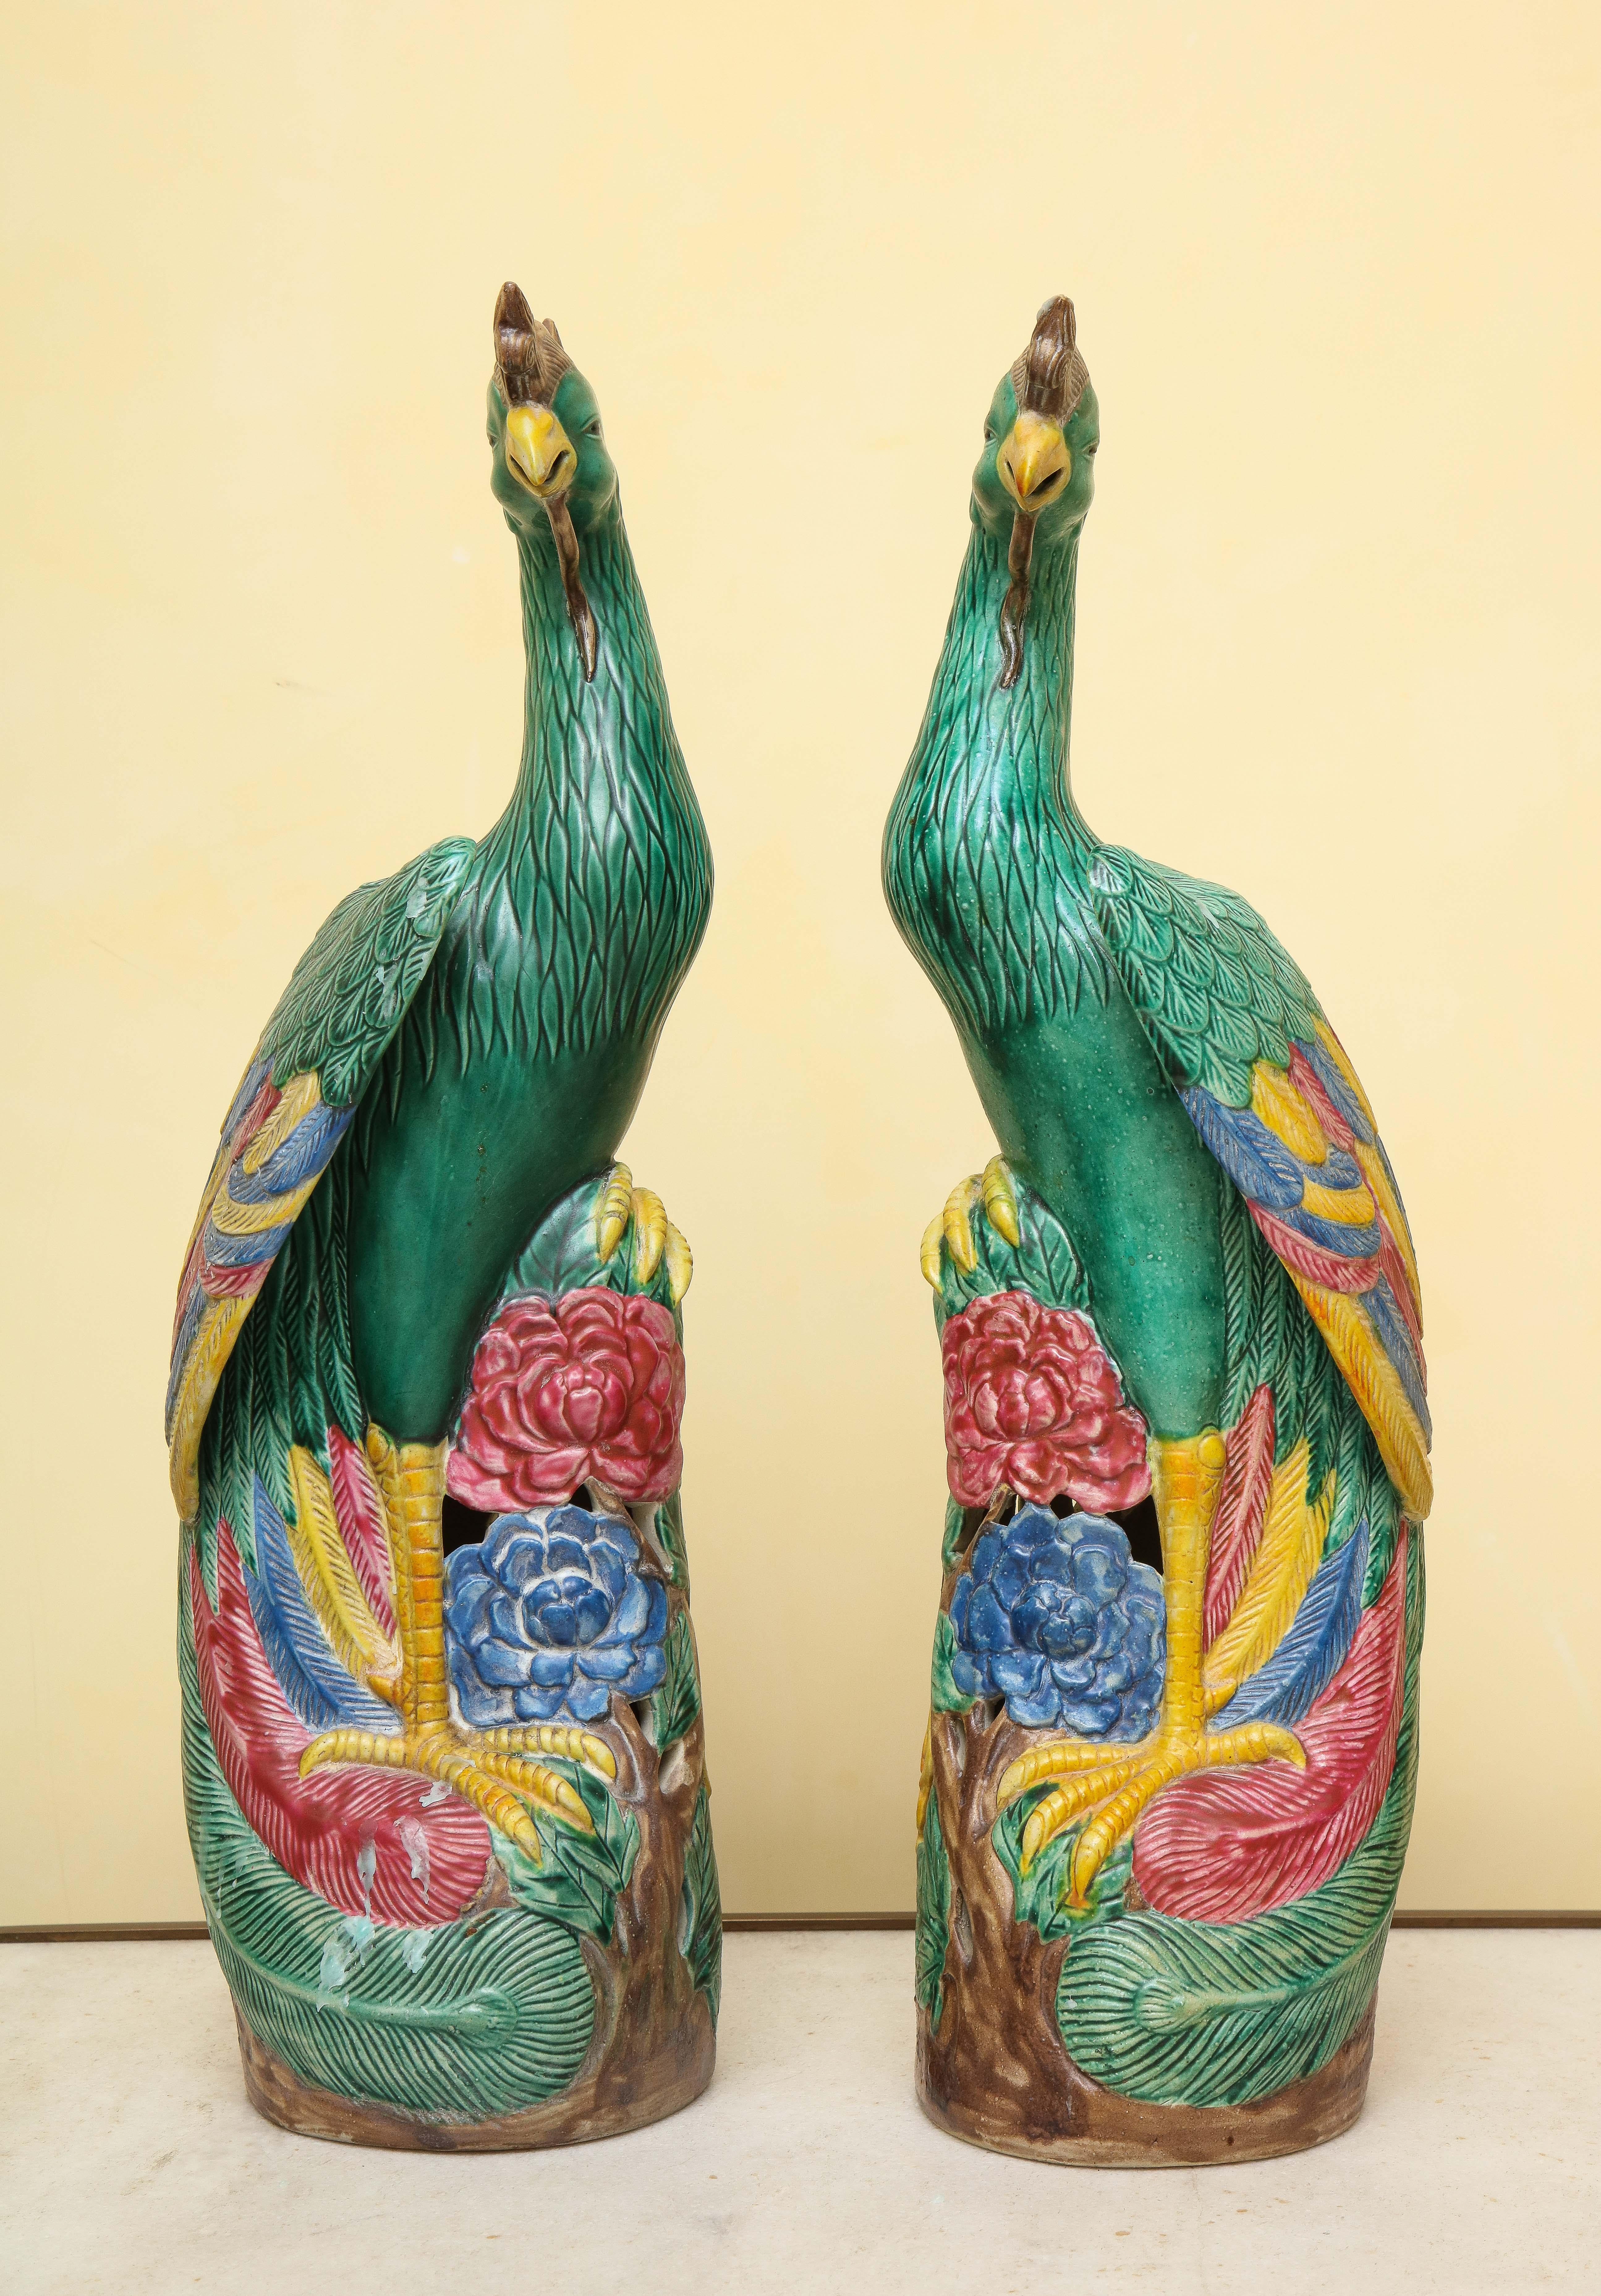 Qing Paire d'oiseaux Phoenix en porcelaine chinoise de style export Ho-Ho